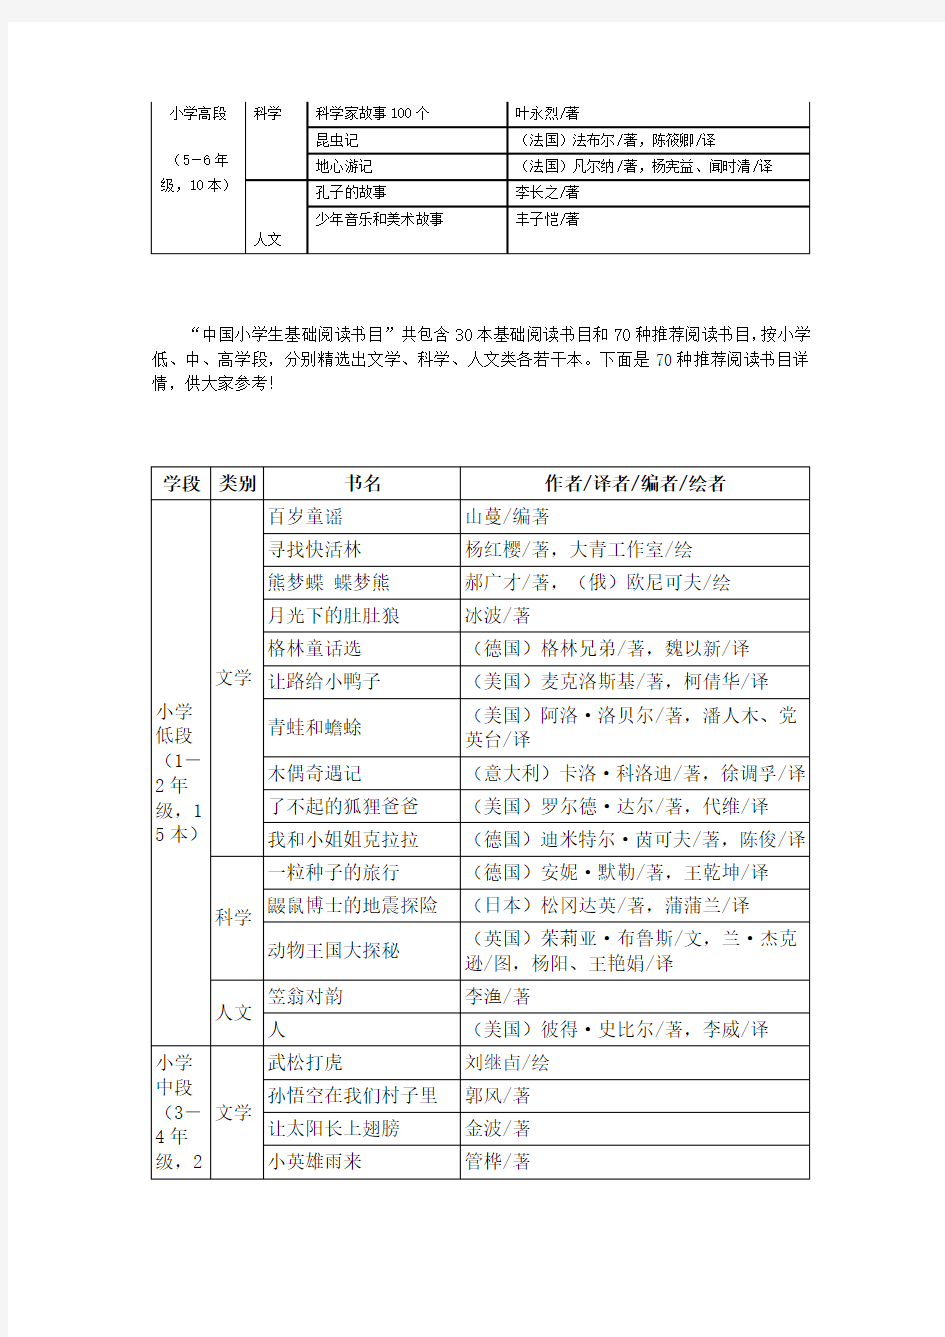 中国小学生基础阅读书目表(新阅读研究所项目组研制,2011年版)